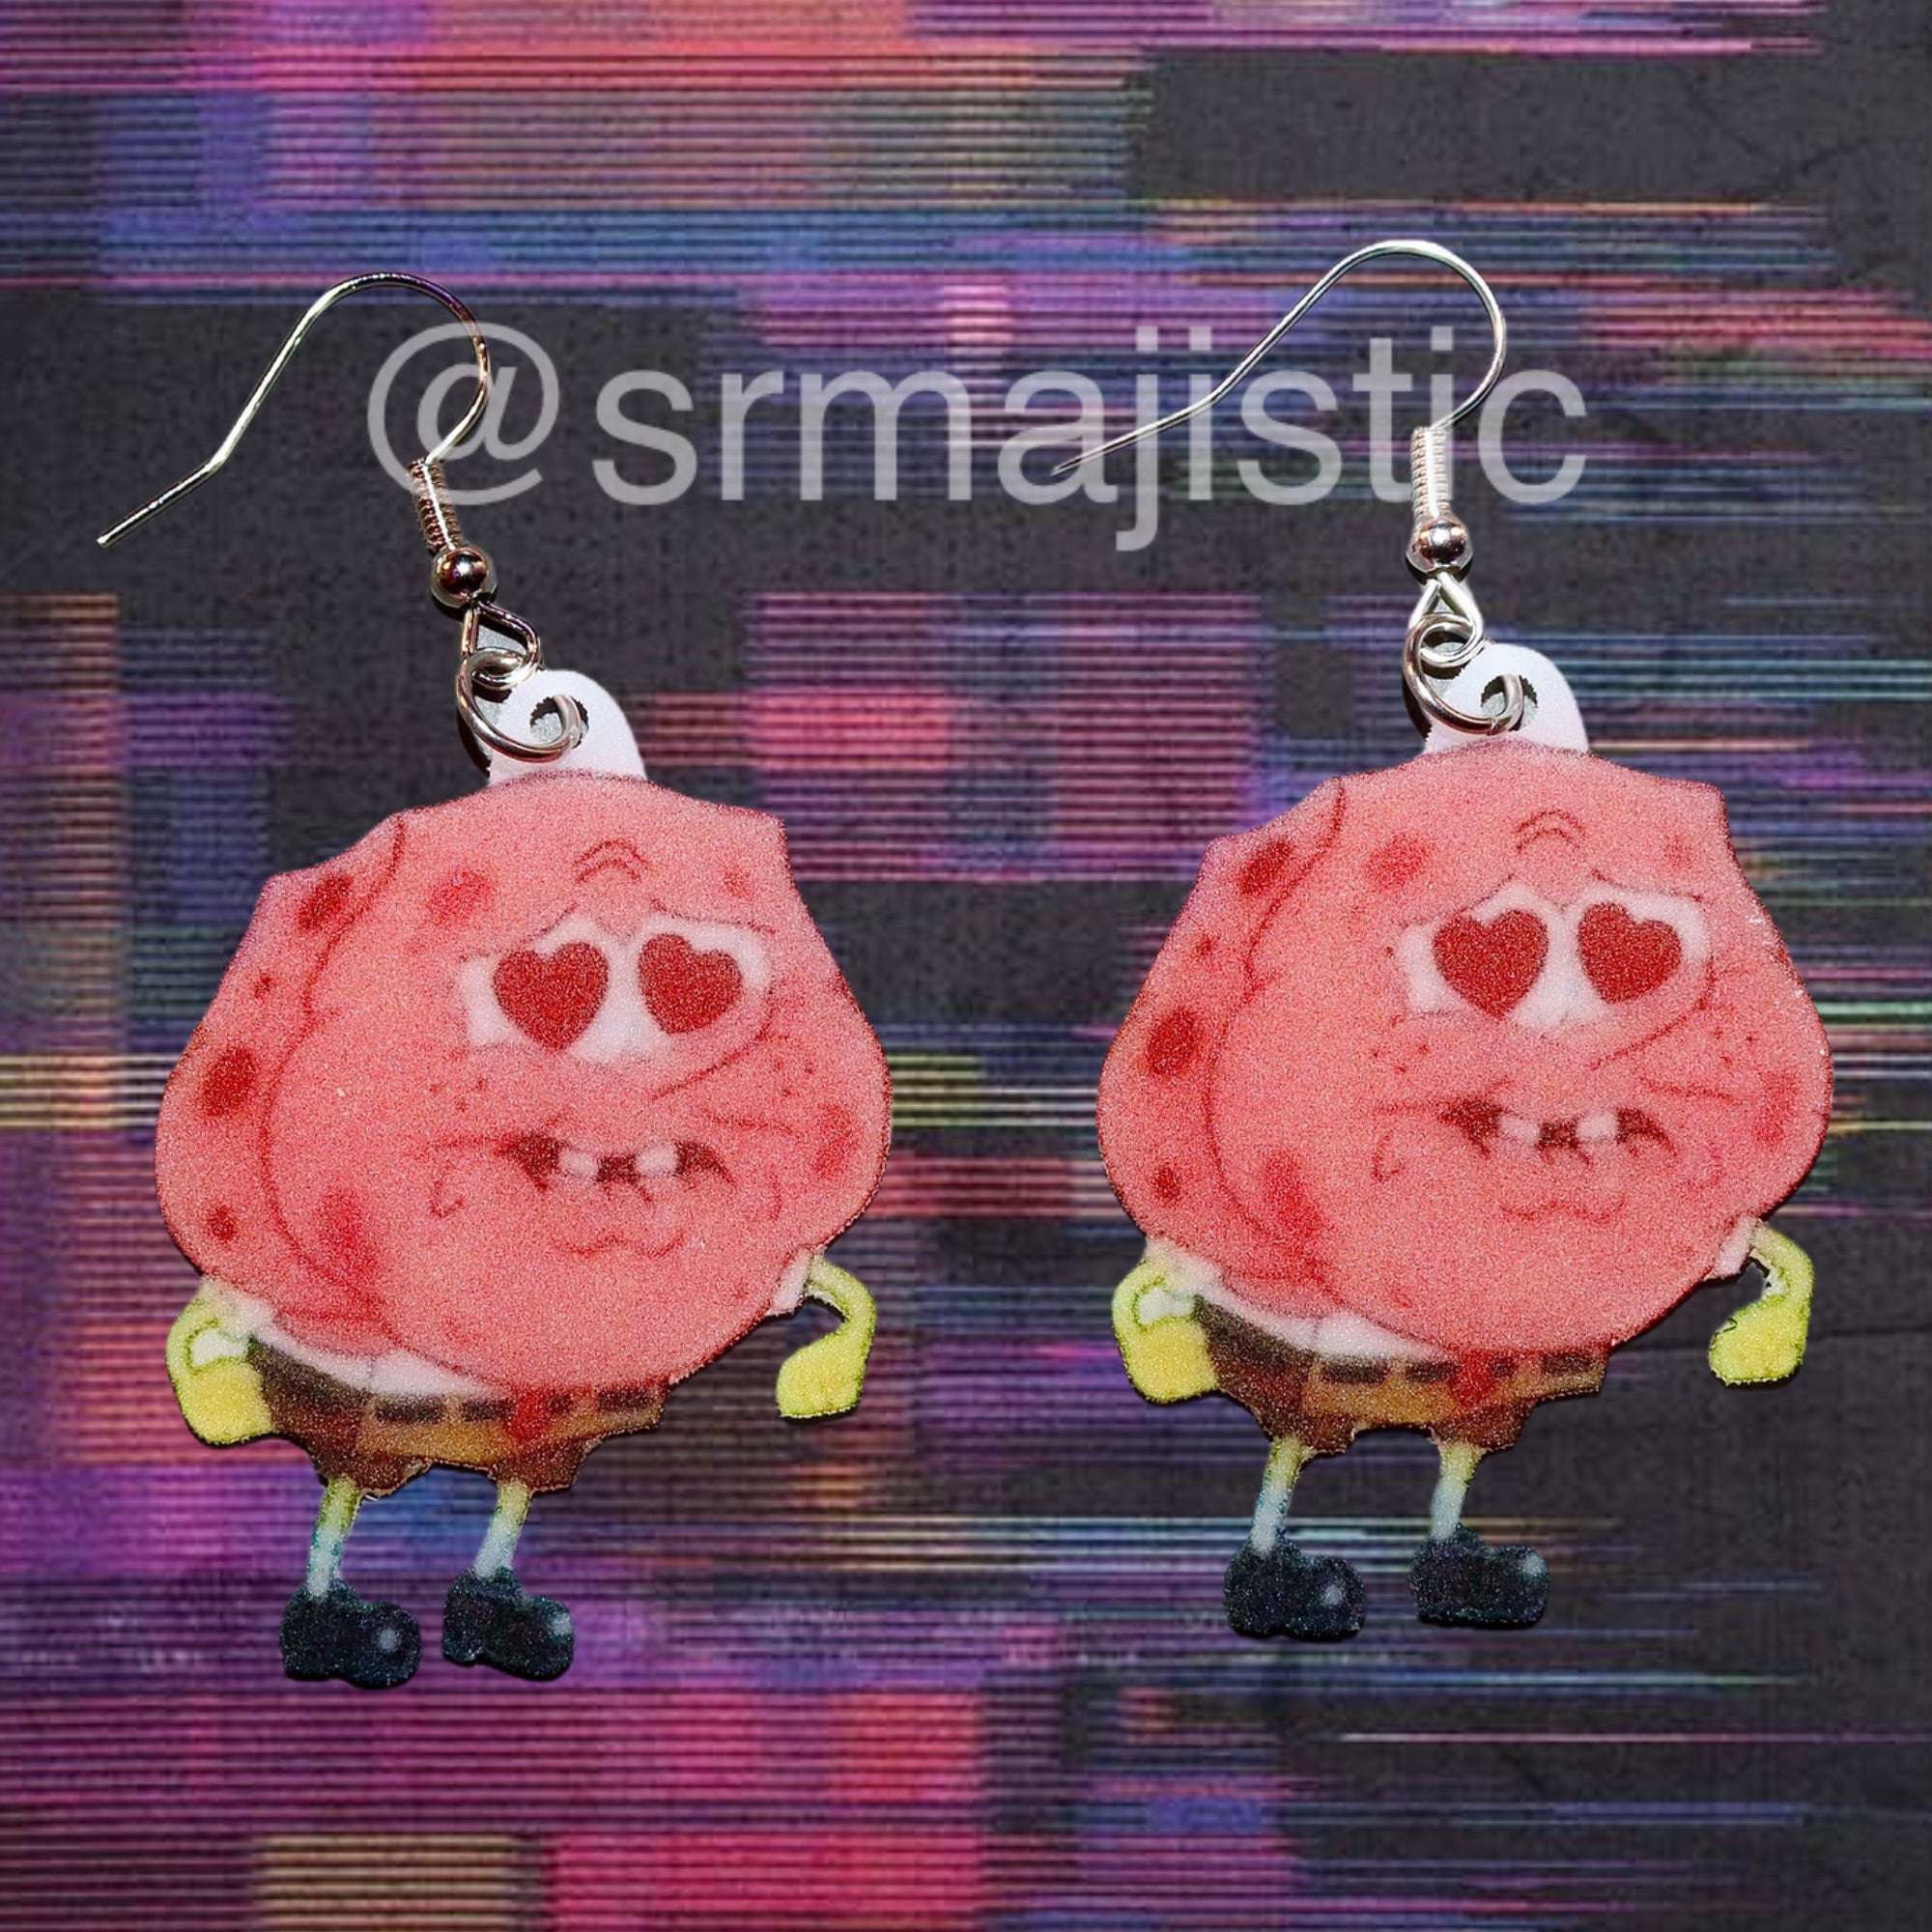 Spongebob Full of Love Character Handmade Earrings!